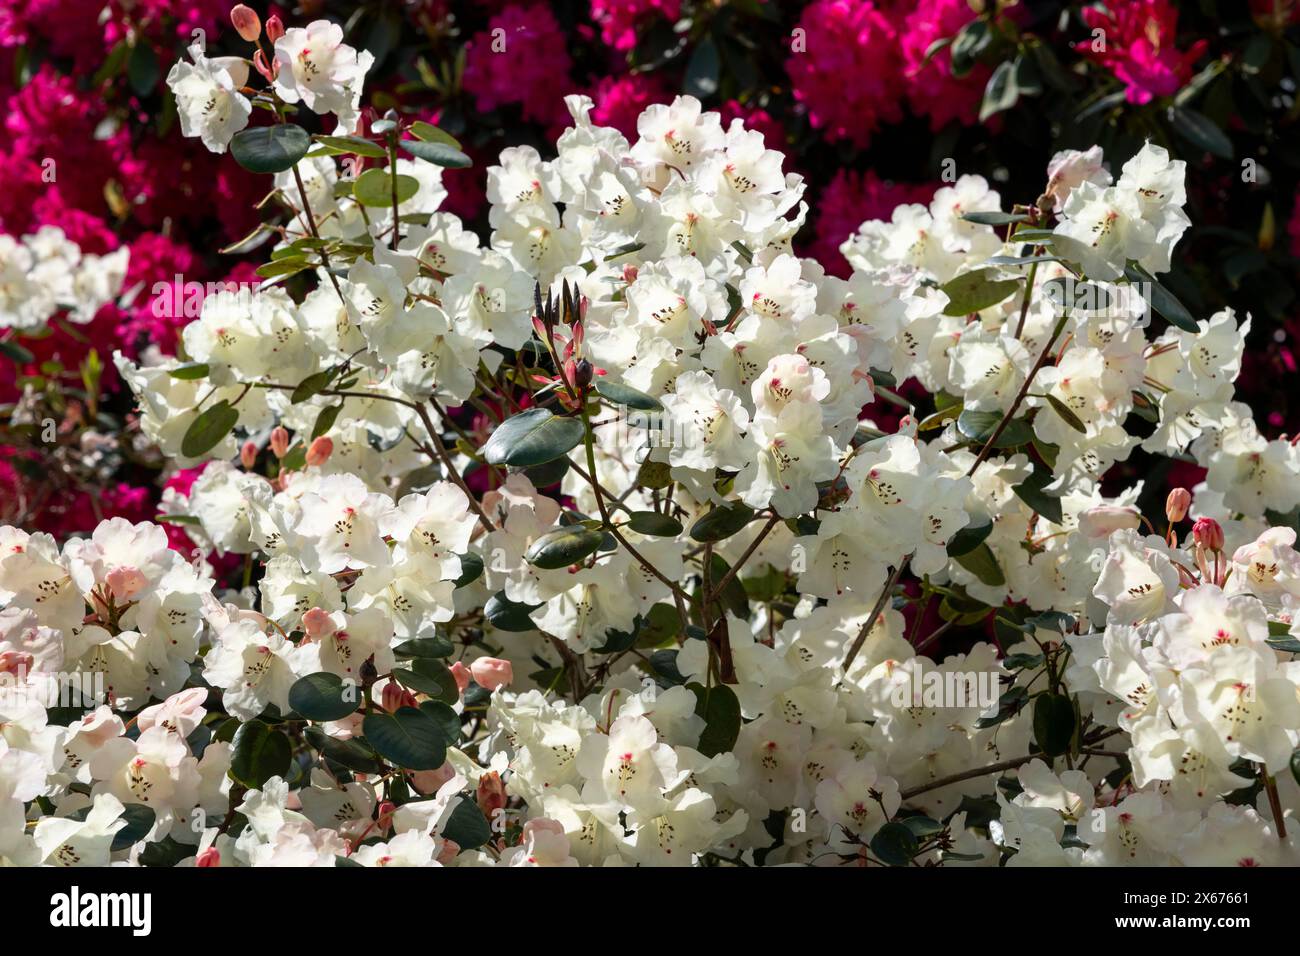 Wunderschöner weißer Rhododendron mit glockenförmigen Blumen, die in der späten Frühlingssonne leuchten. Stockfoto